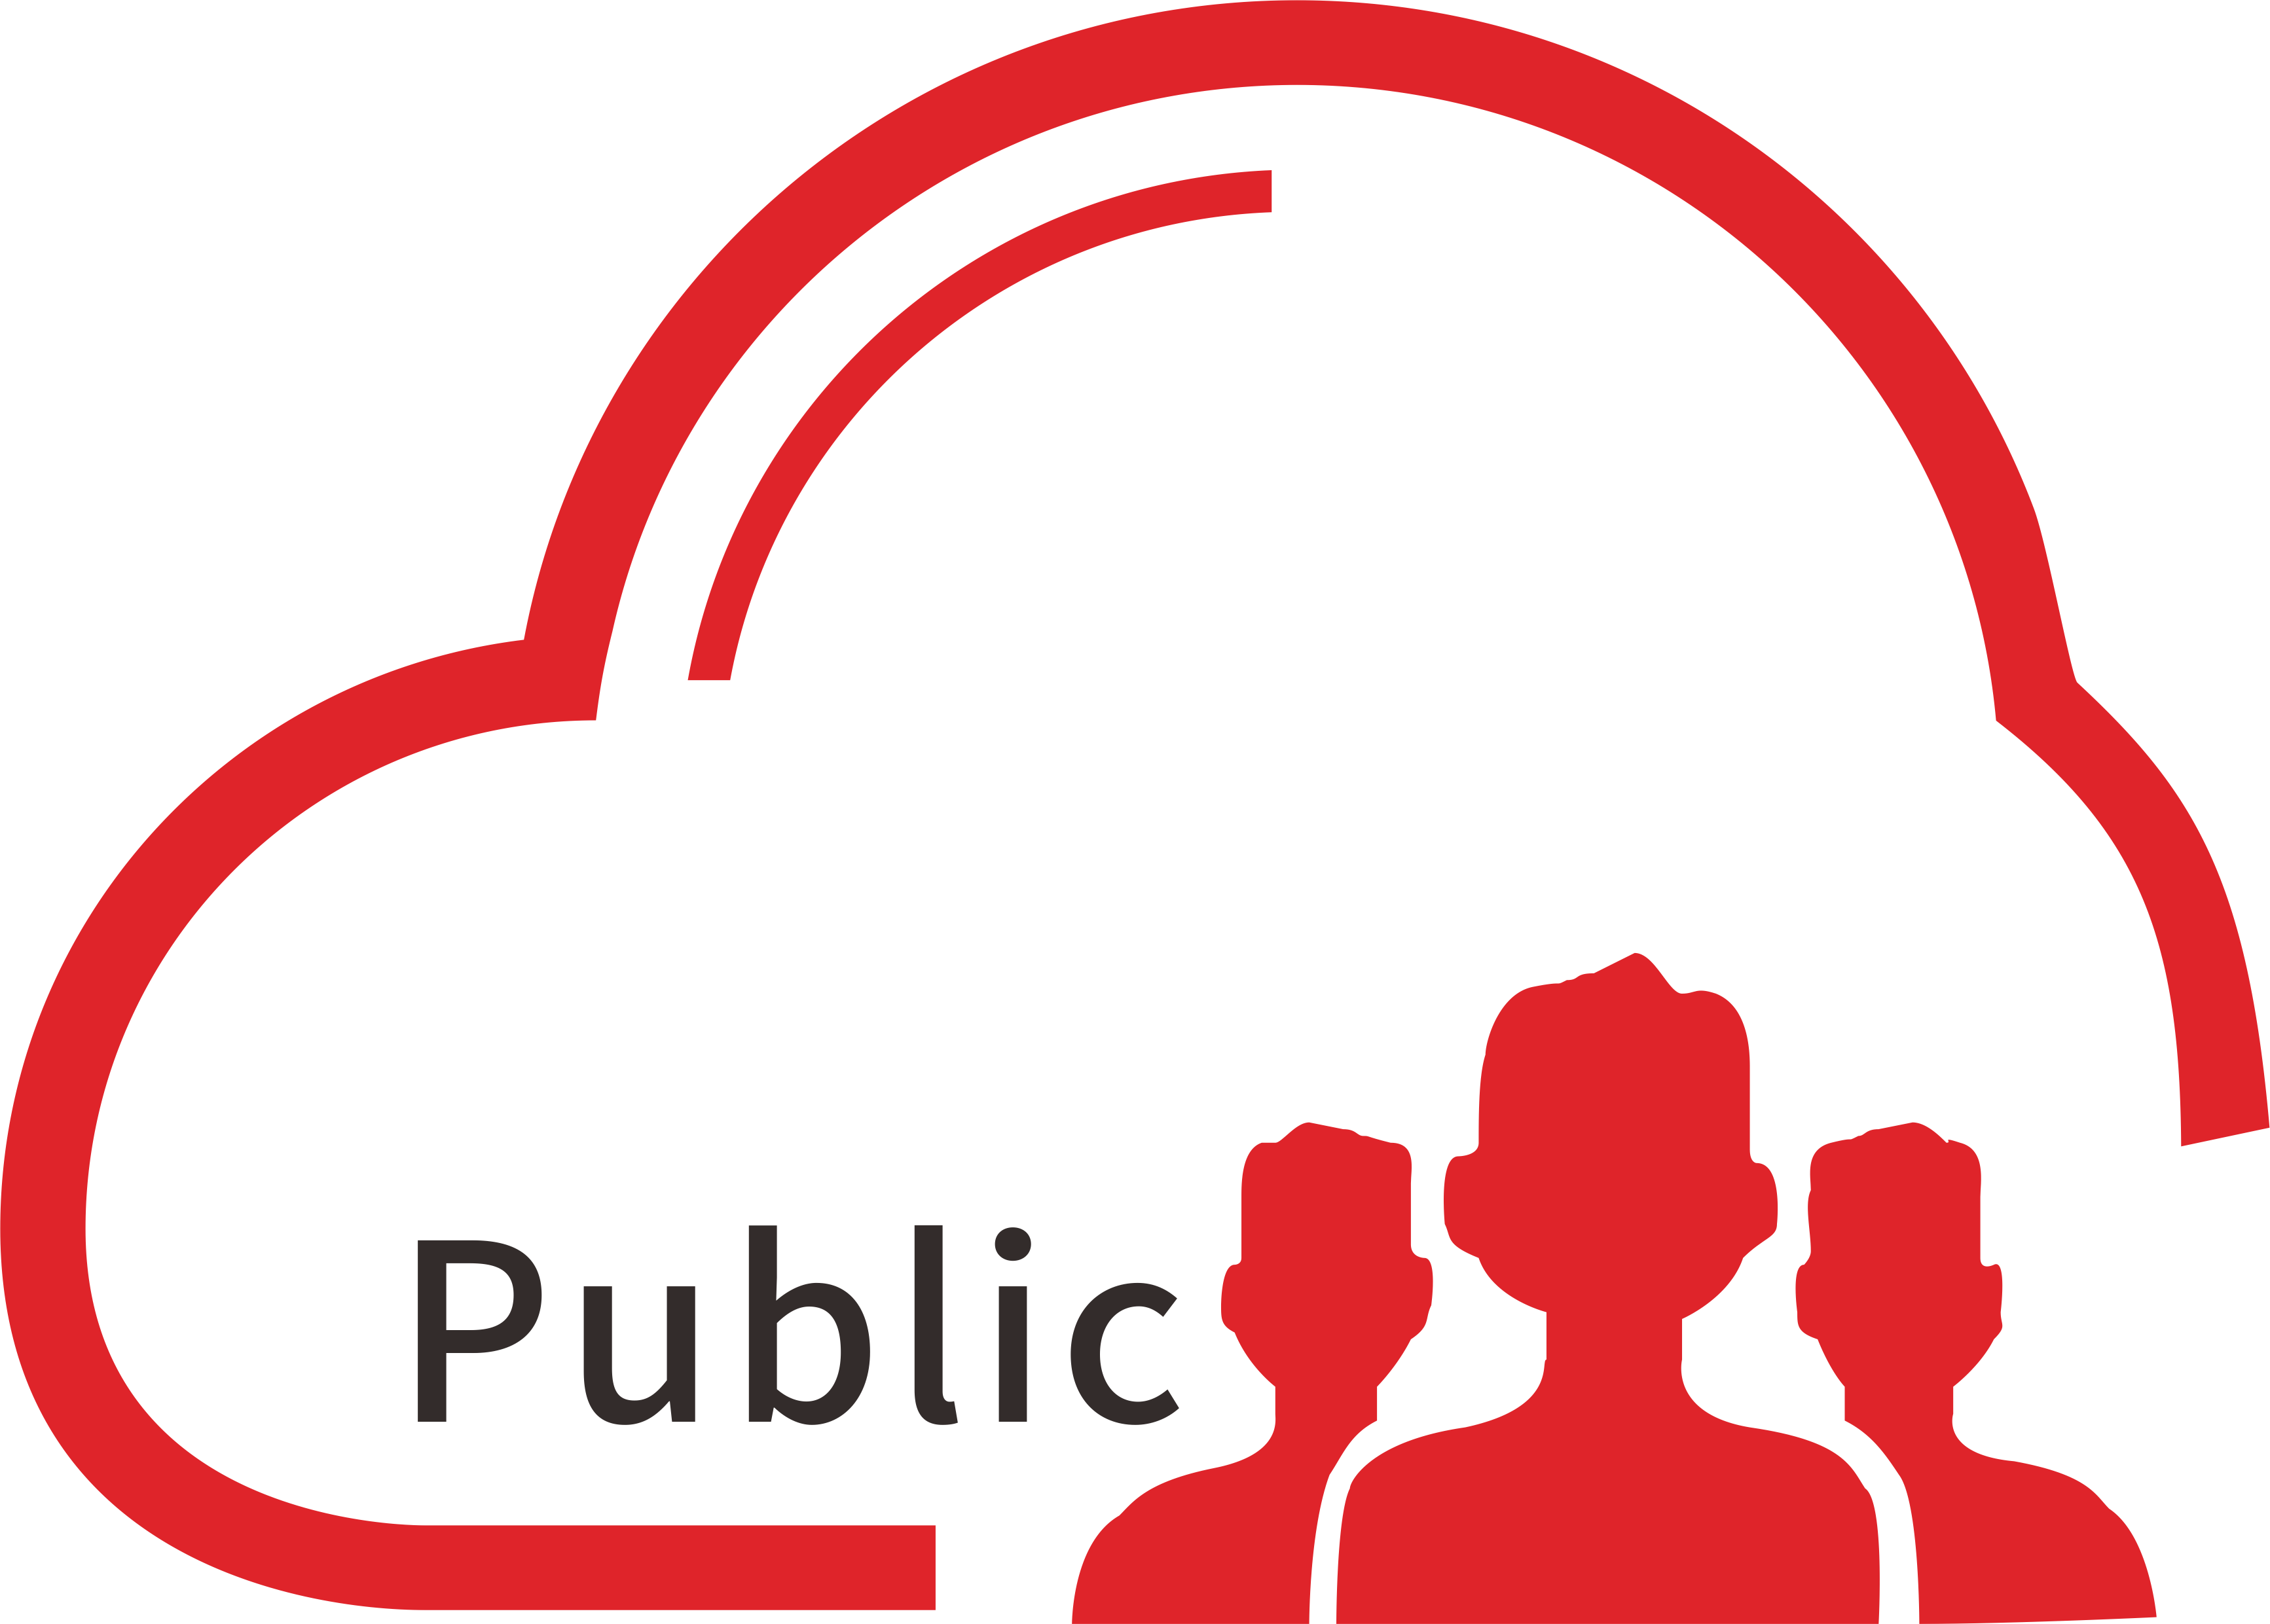 Iris Recognition Public Cloud Computing Platform